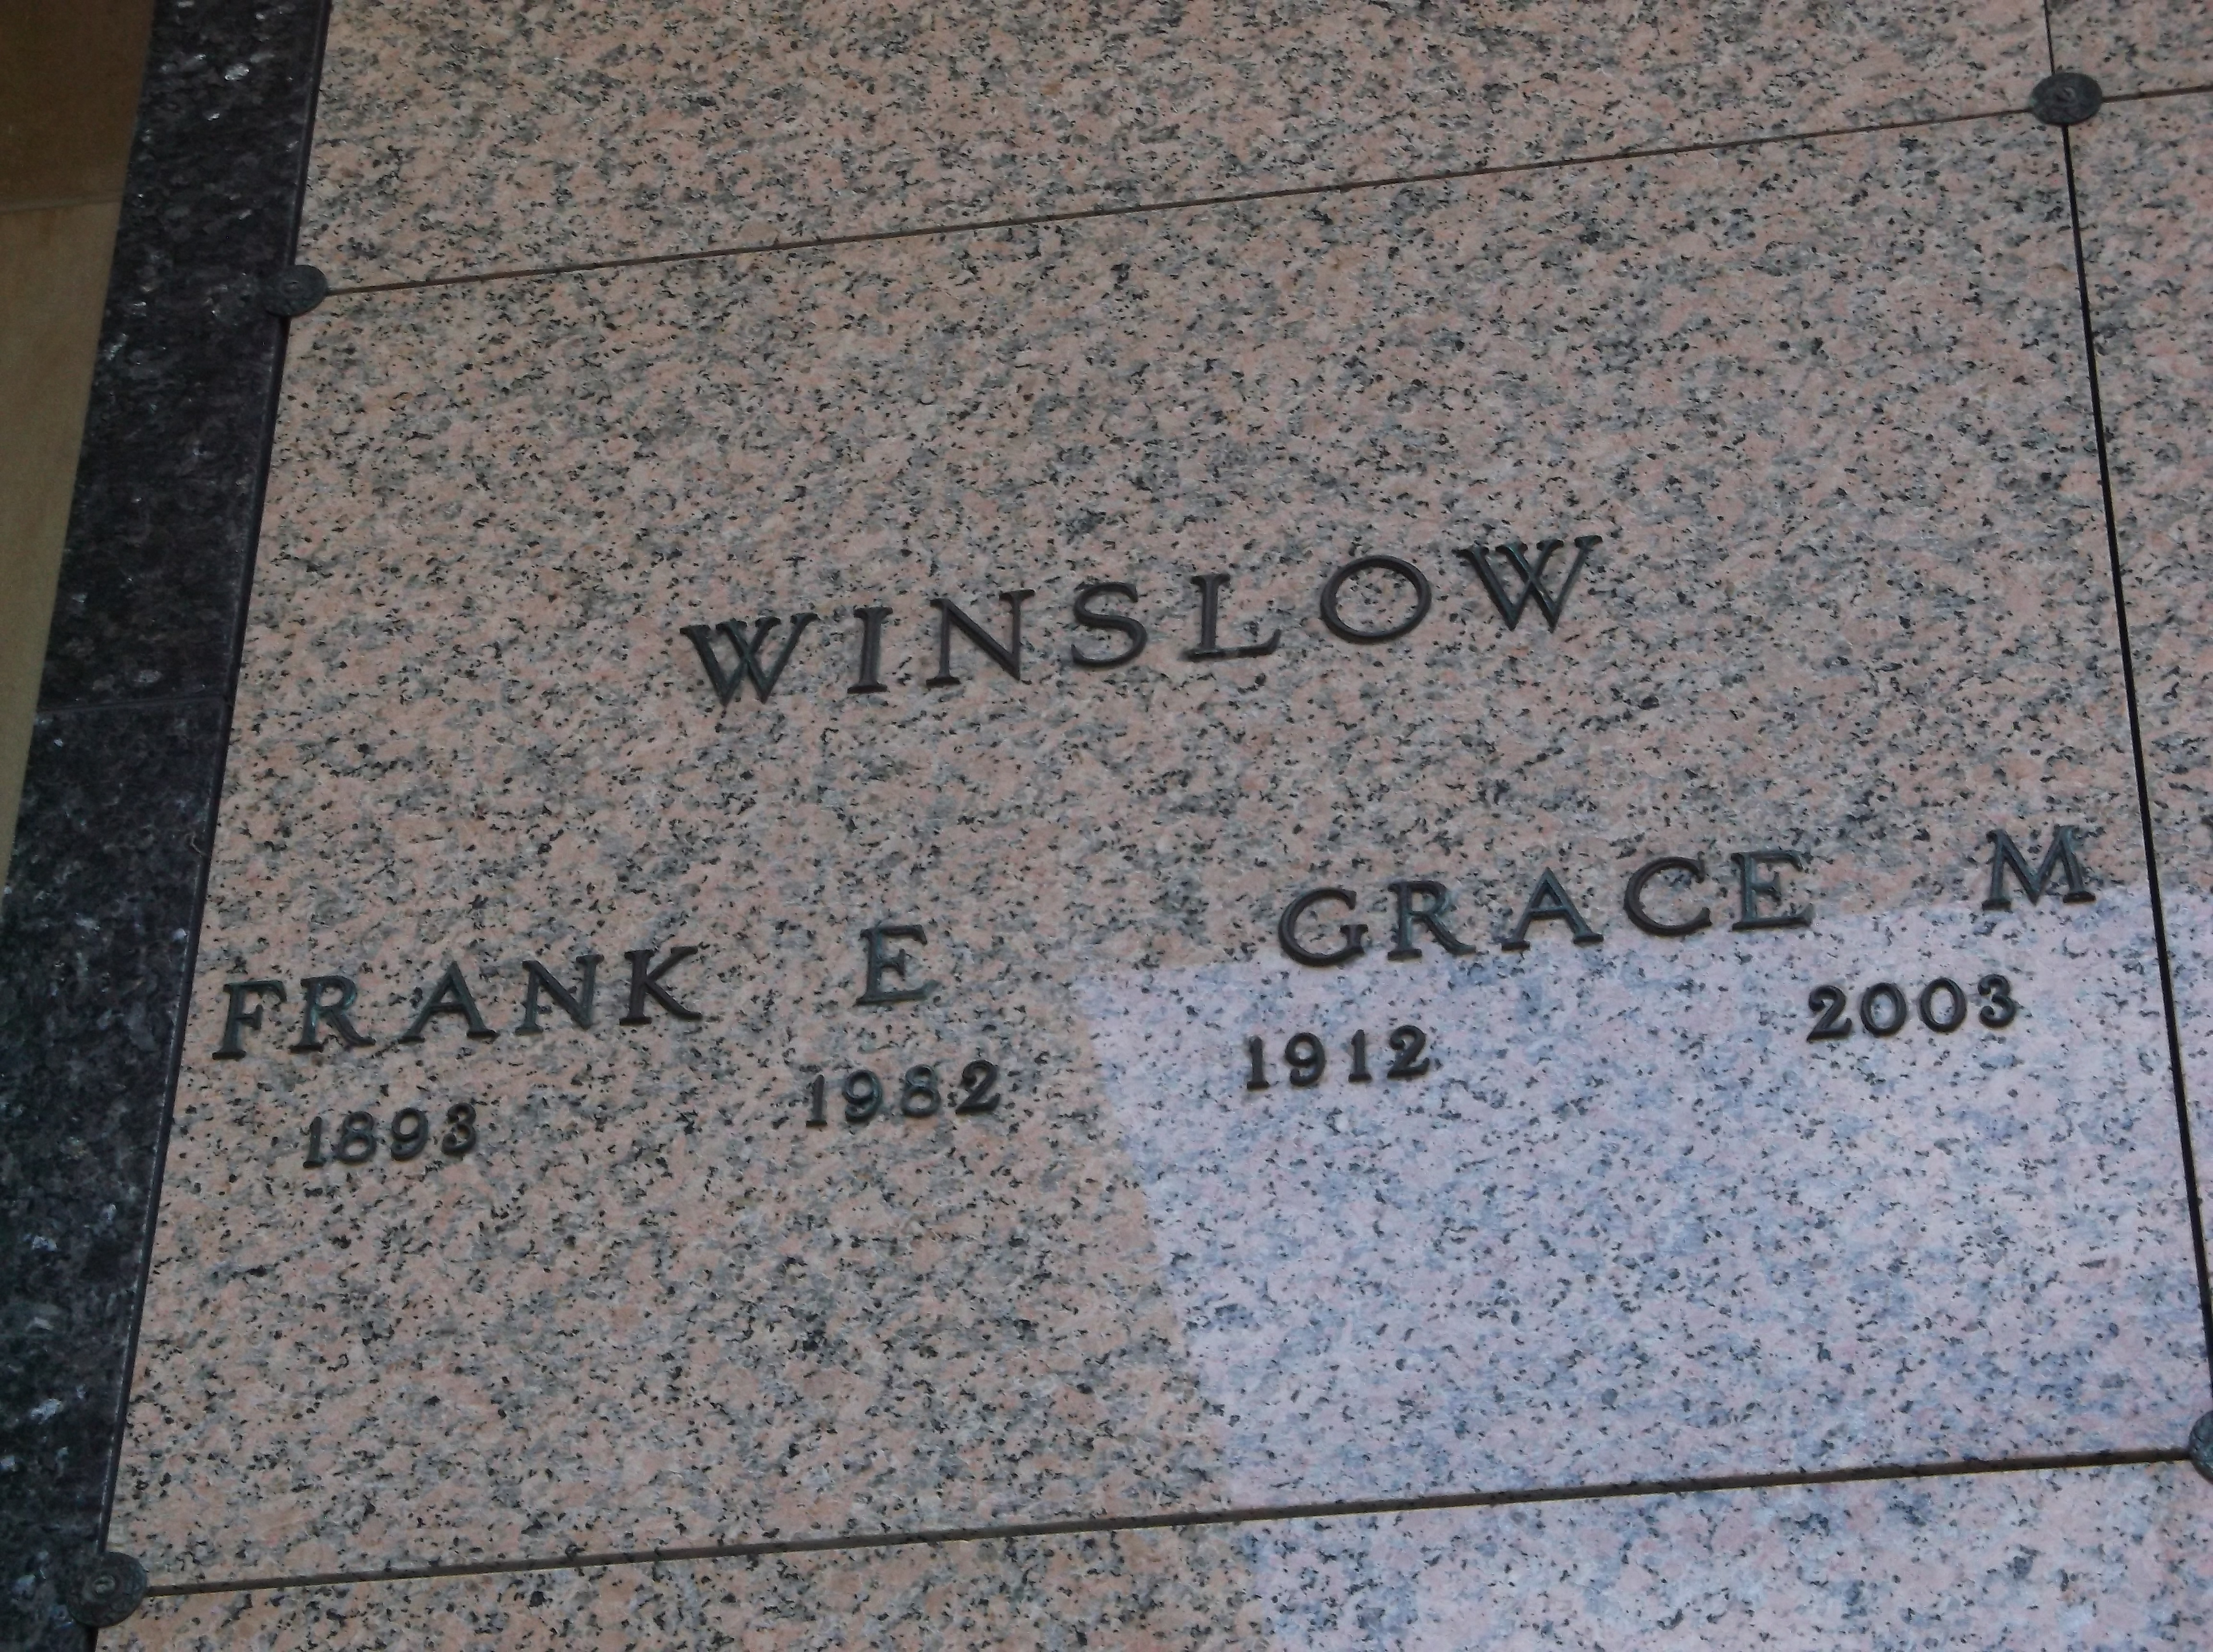 Frank E Winslow